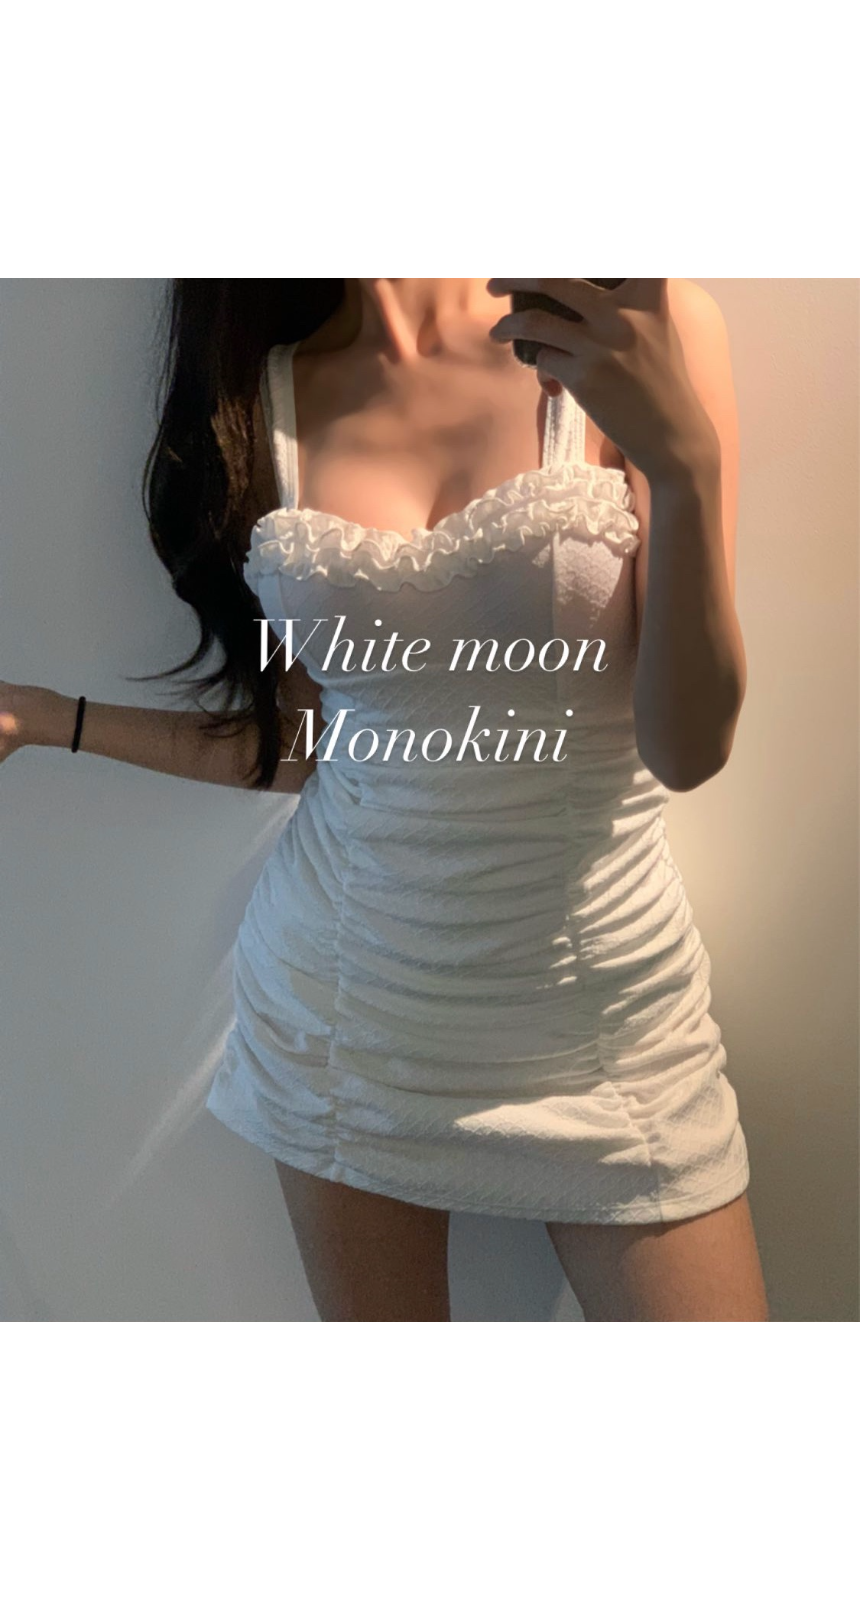 White moon monokini